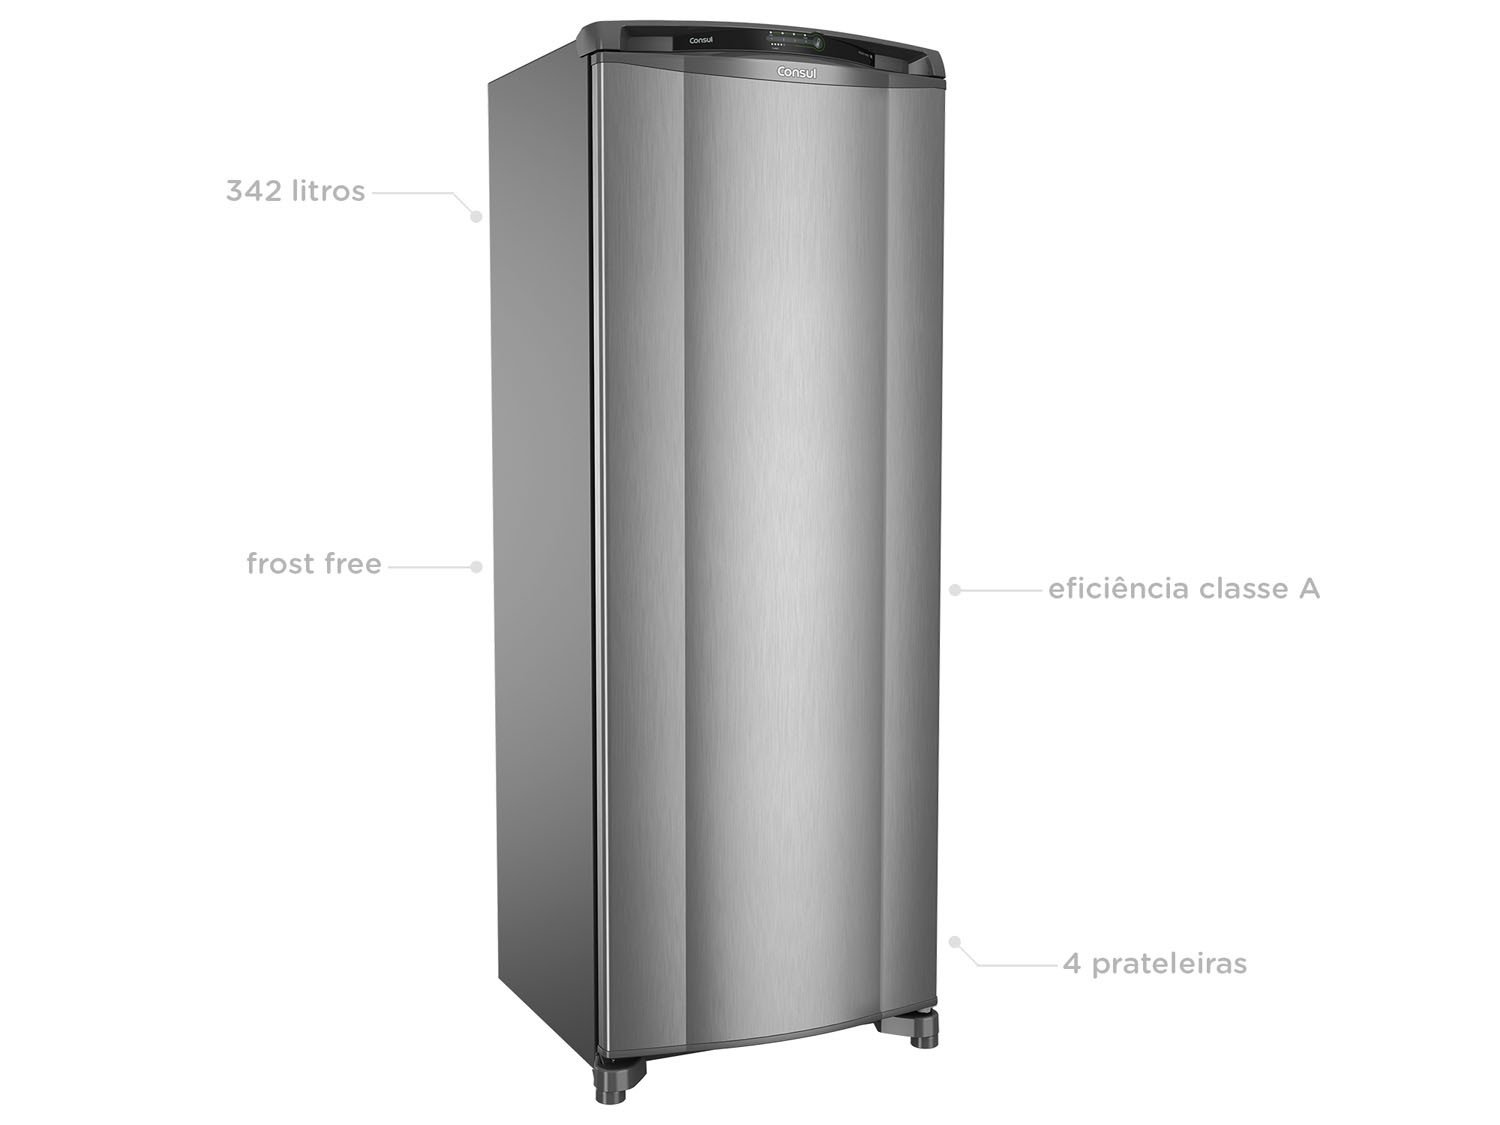 Refrigerador Consul Frost Free Facilite CRB39AK 1 Porta Evox – 342 litros - 110V - 2